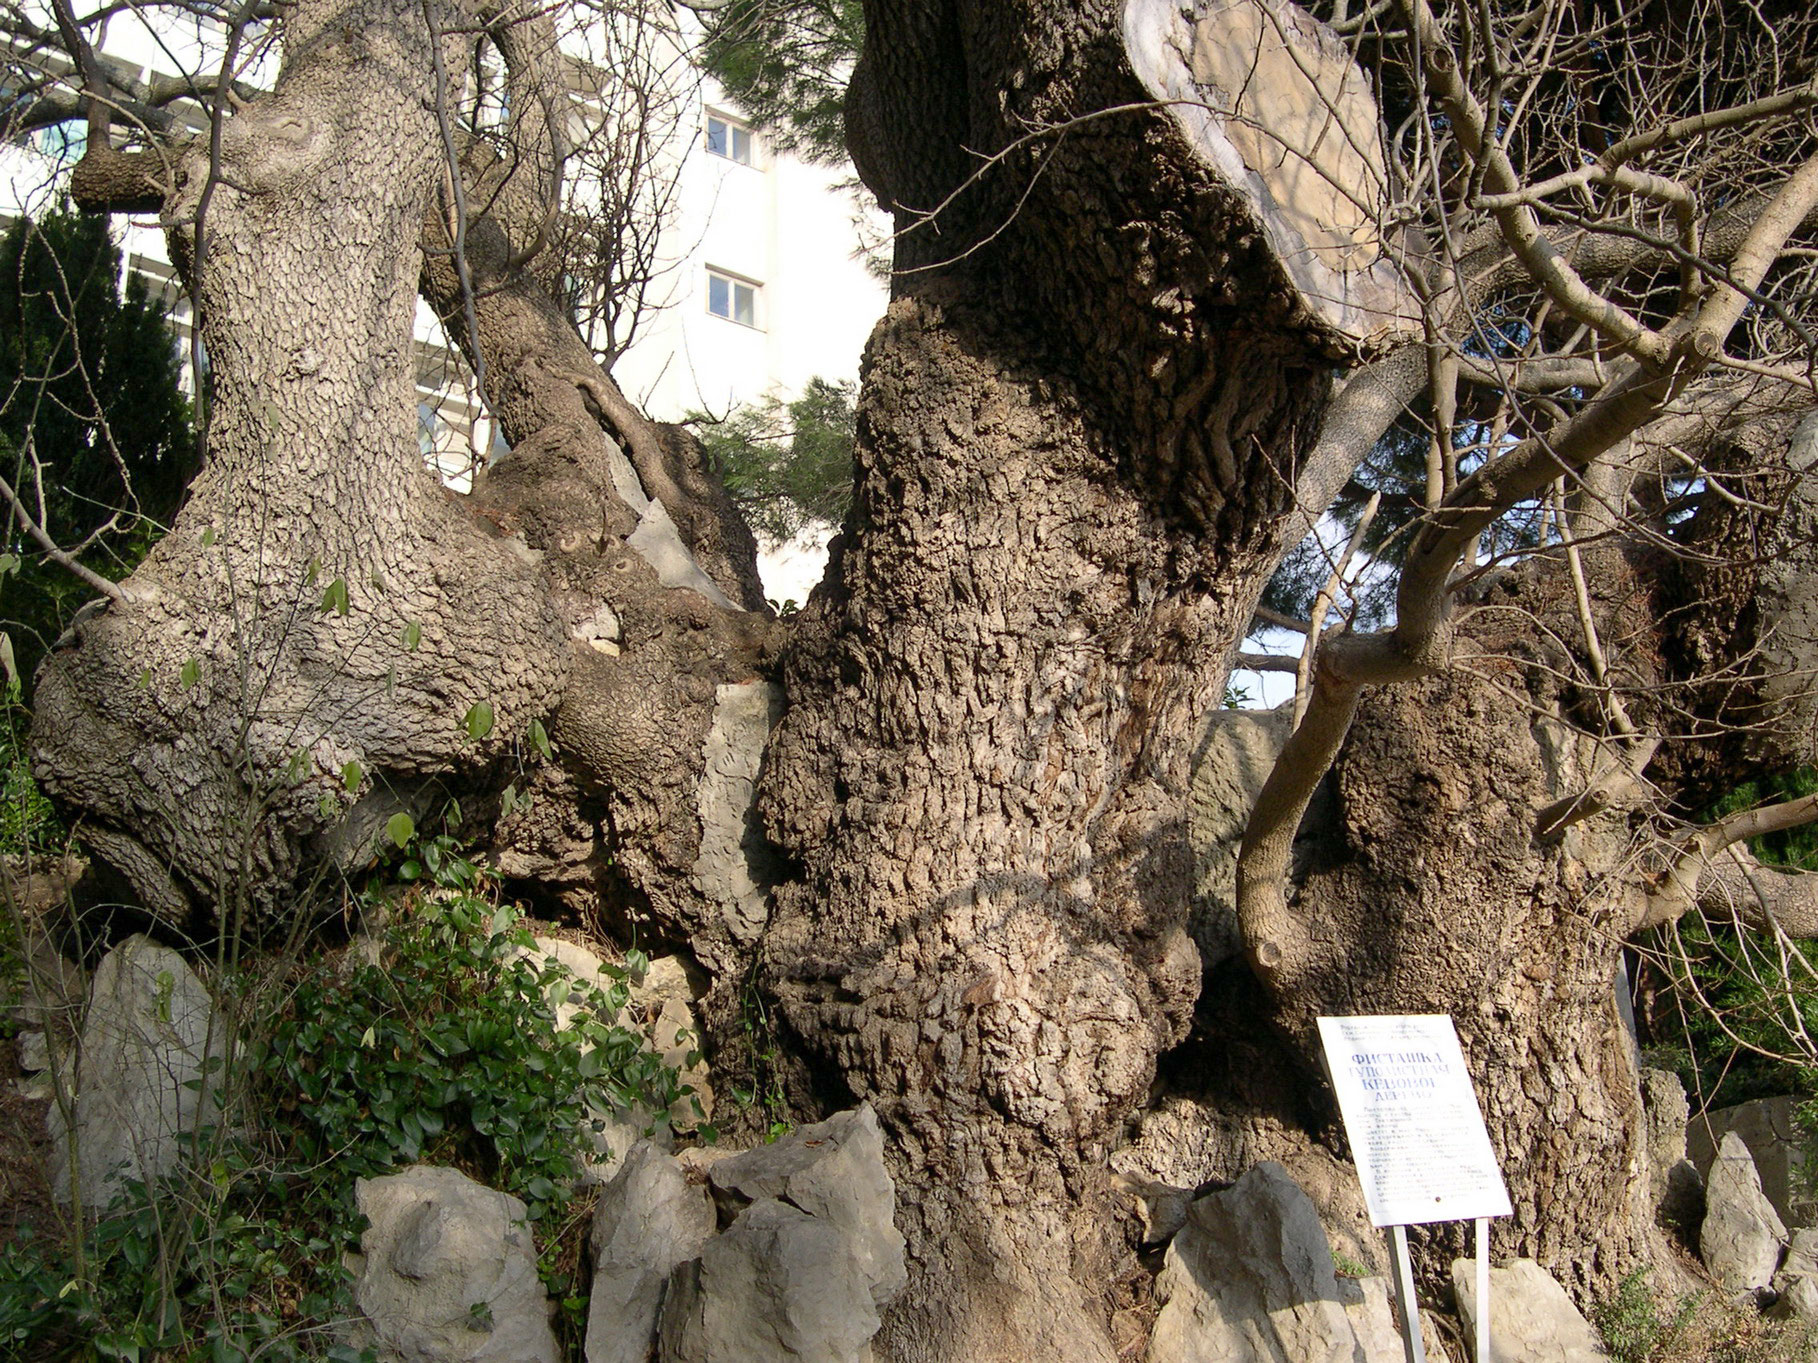 Дерево фисташковое в крыму фото